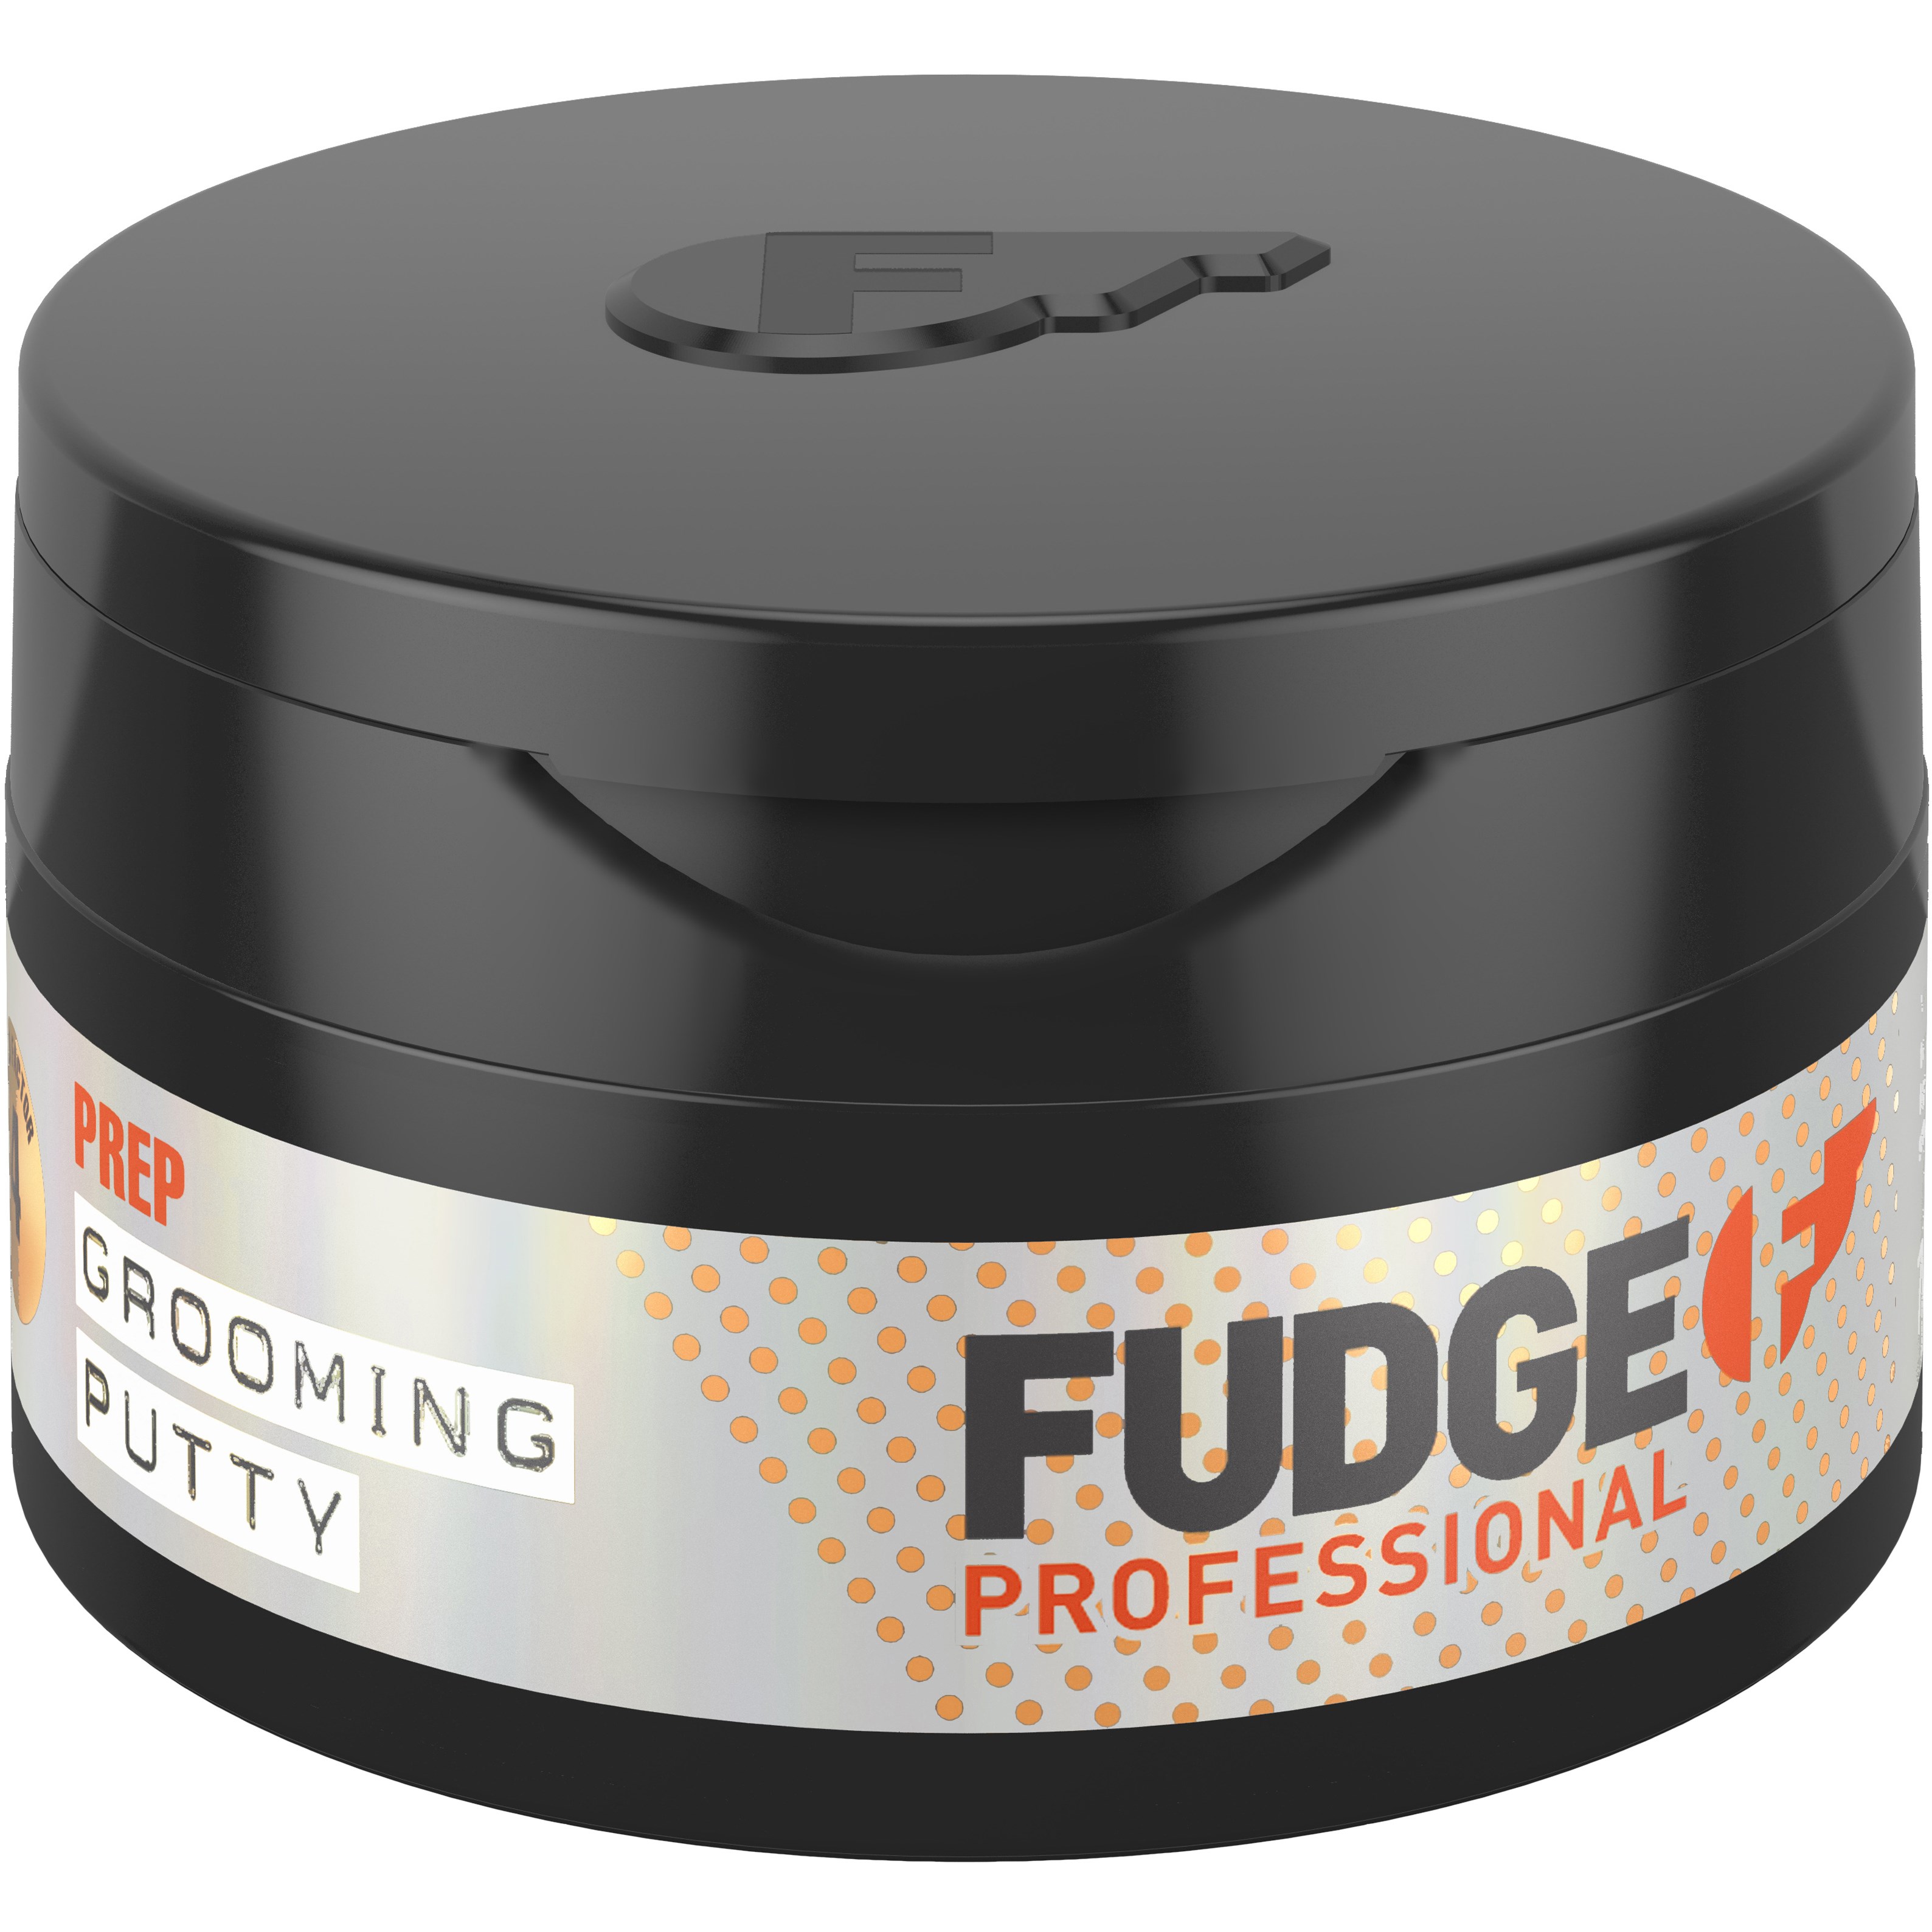 Läs mer om fudge Grooming Putty